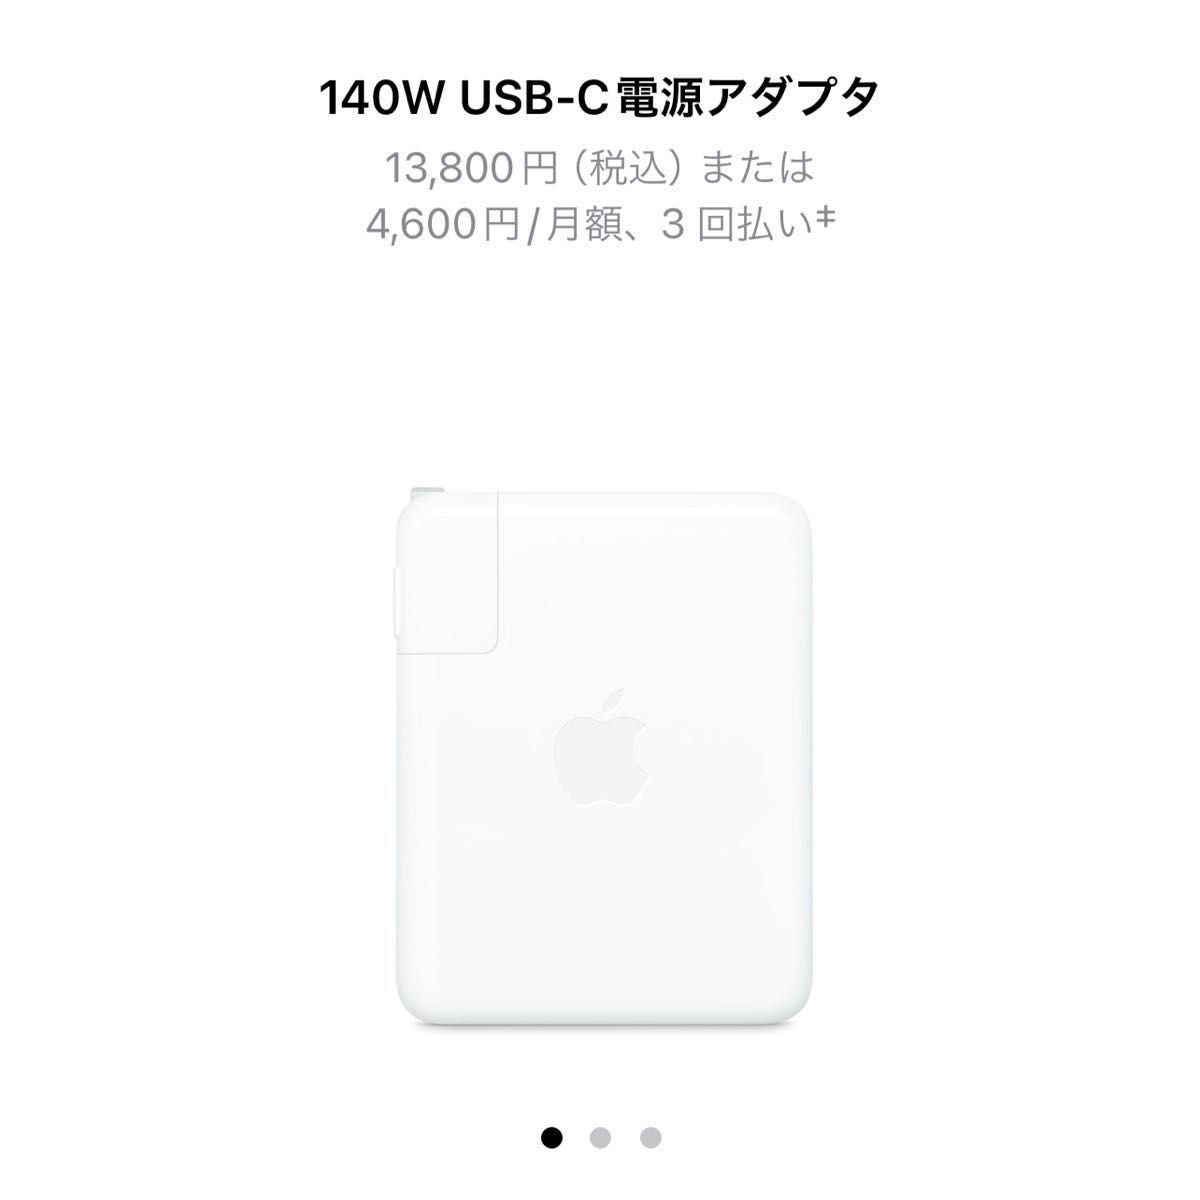 新品未使用 Apple純正品 MacBook充電器140W USB-C電源アダプター 定価13800円